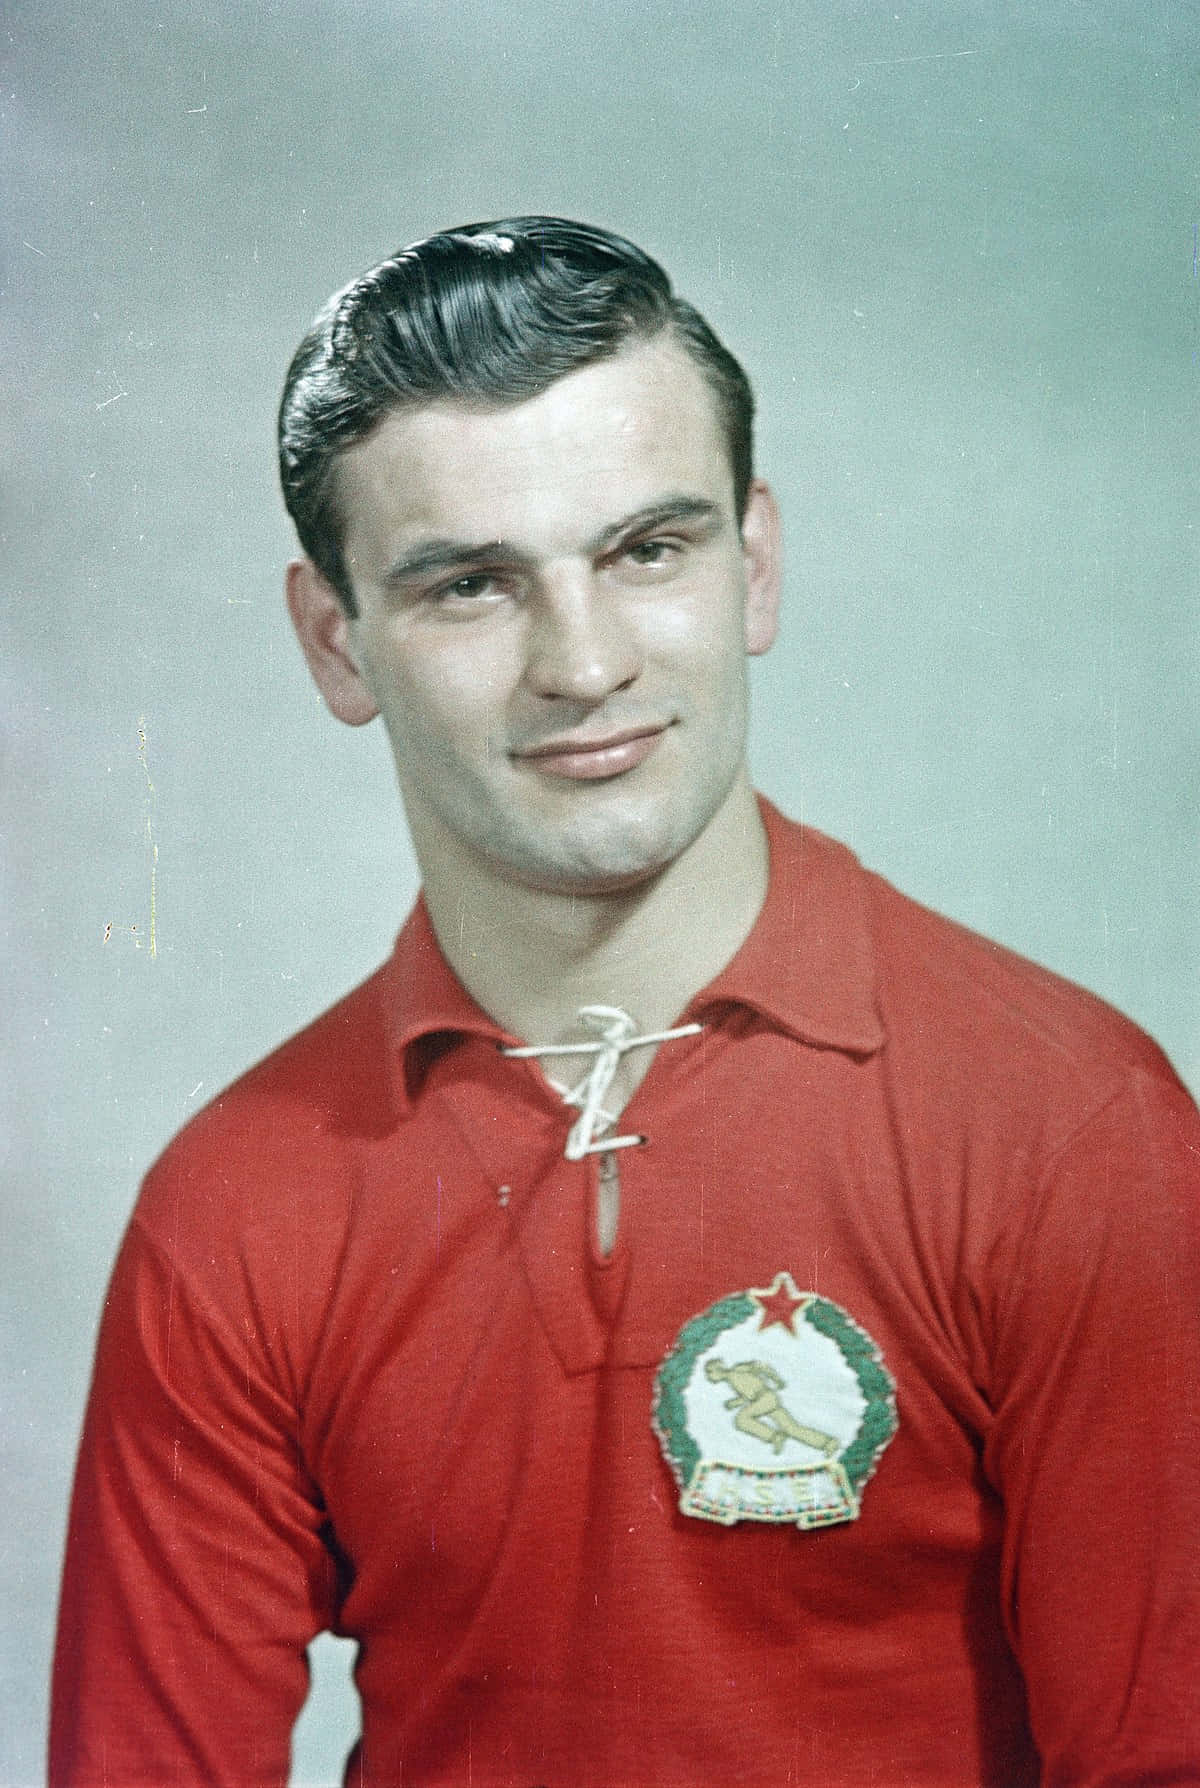 Portræt af den ungarske fodboldspiller Sandor Kocsis på tapetet. Wallpaper